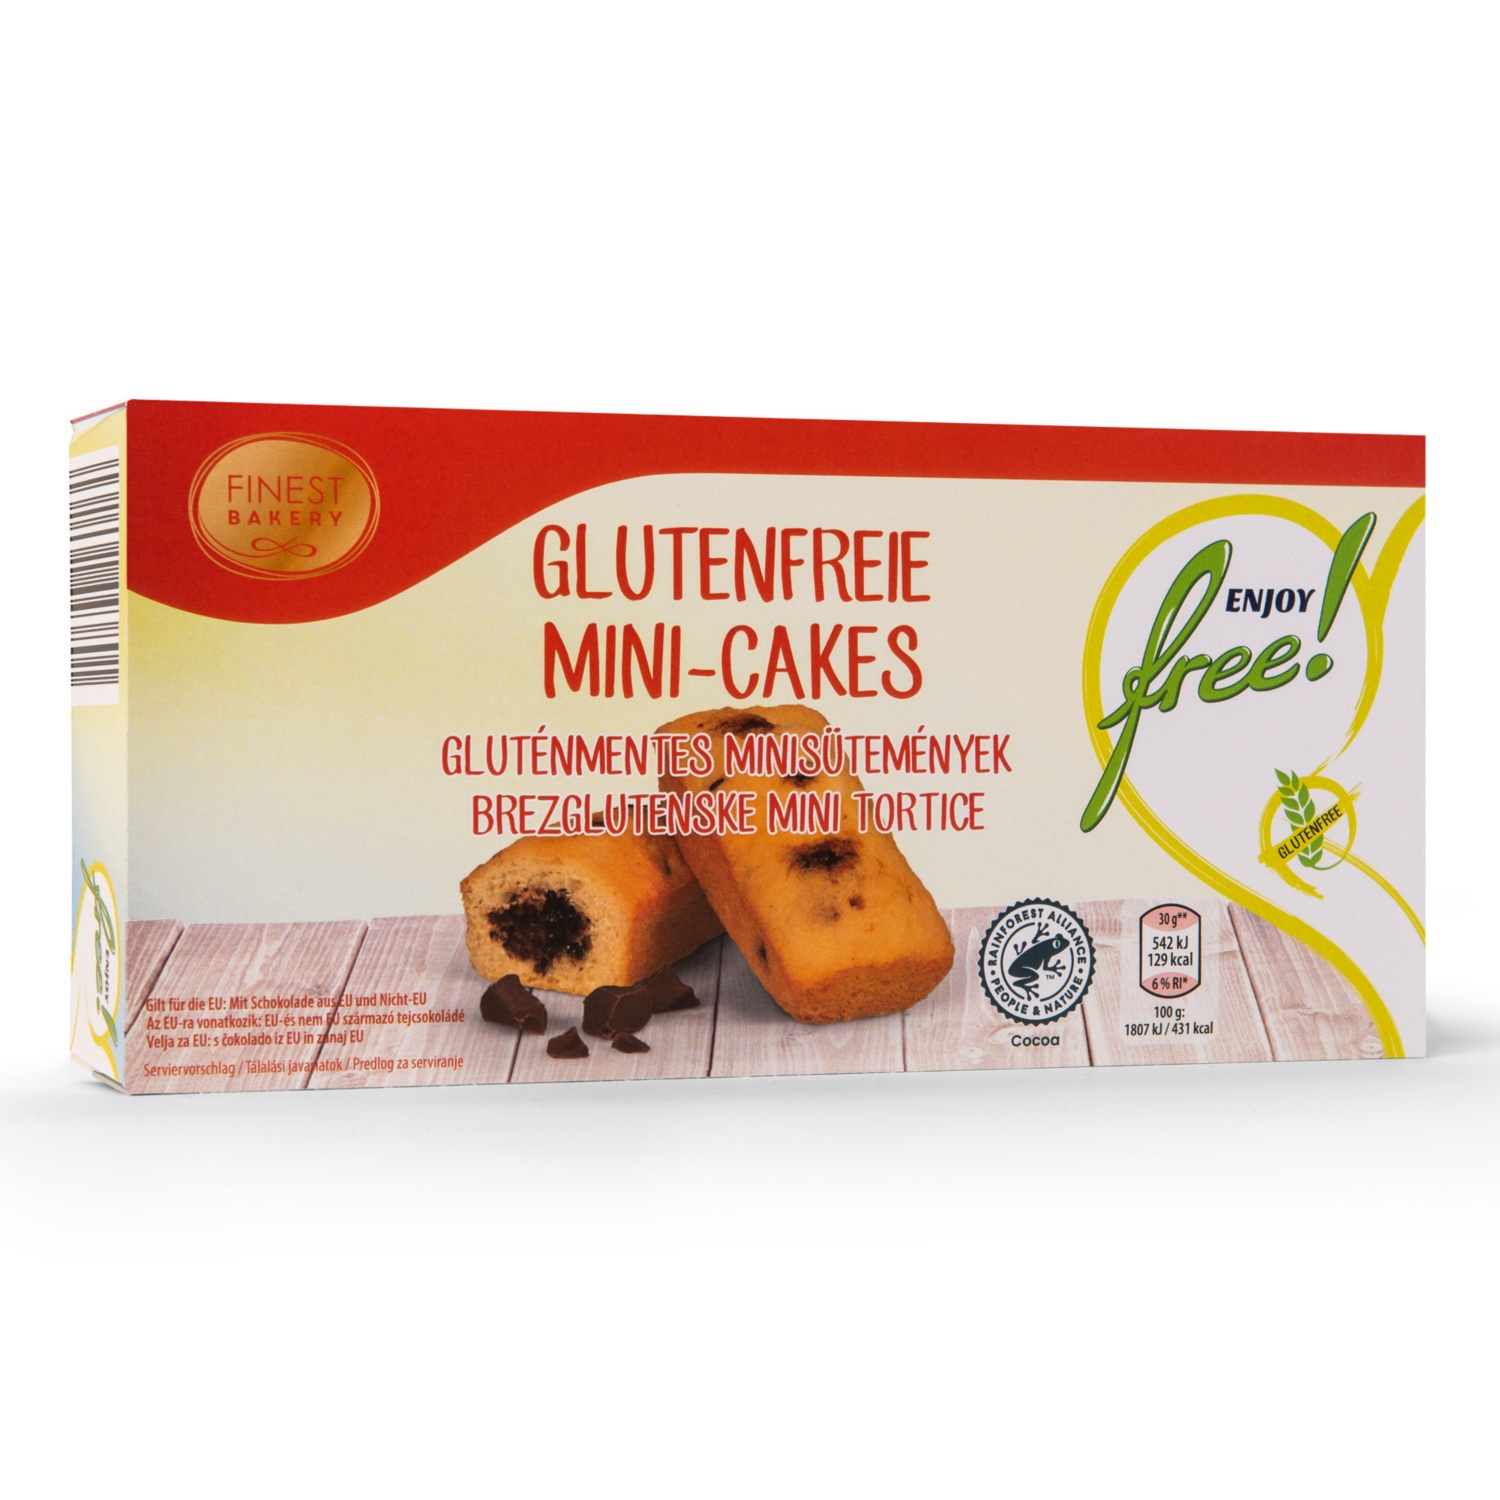 ENJOY FREE! Mini Kuchen glutenfrei, Cakes